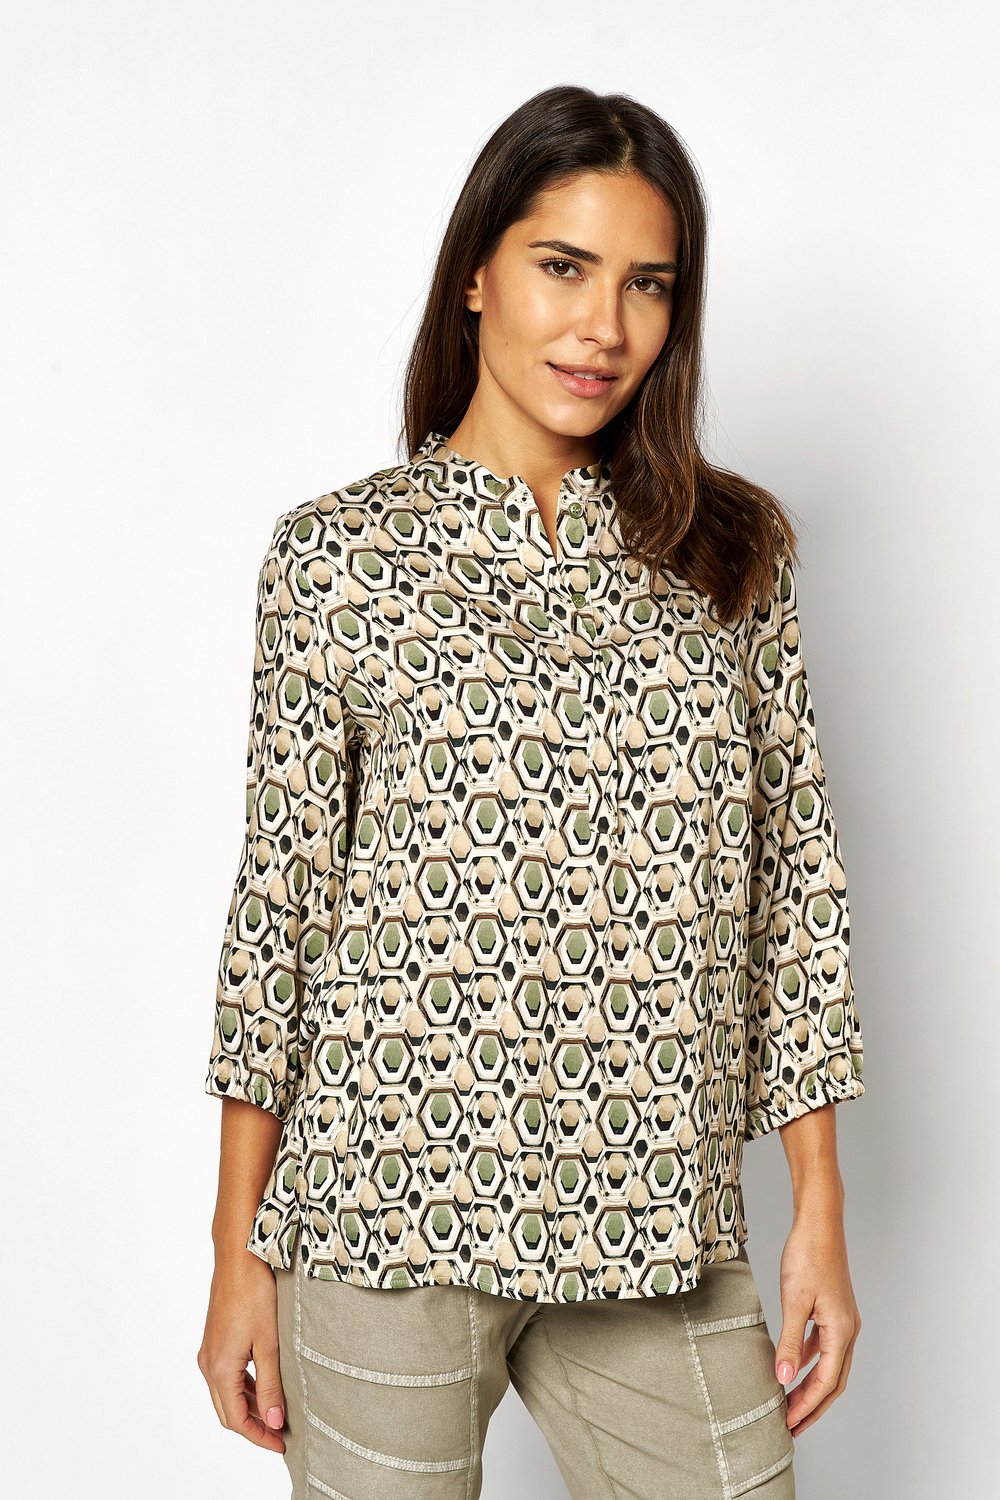 Pull-on blouse with retro print | Style »Alis« multicolour khaki